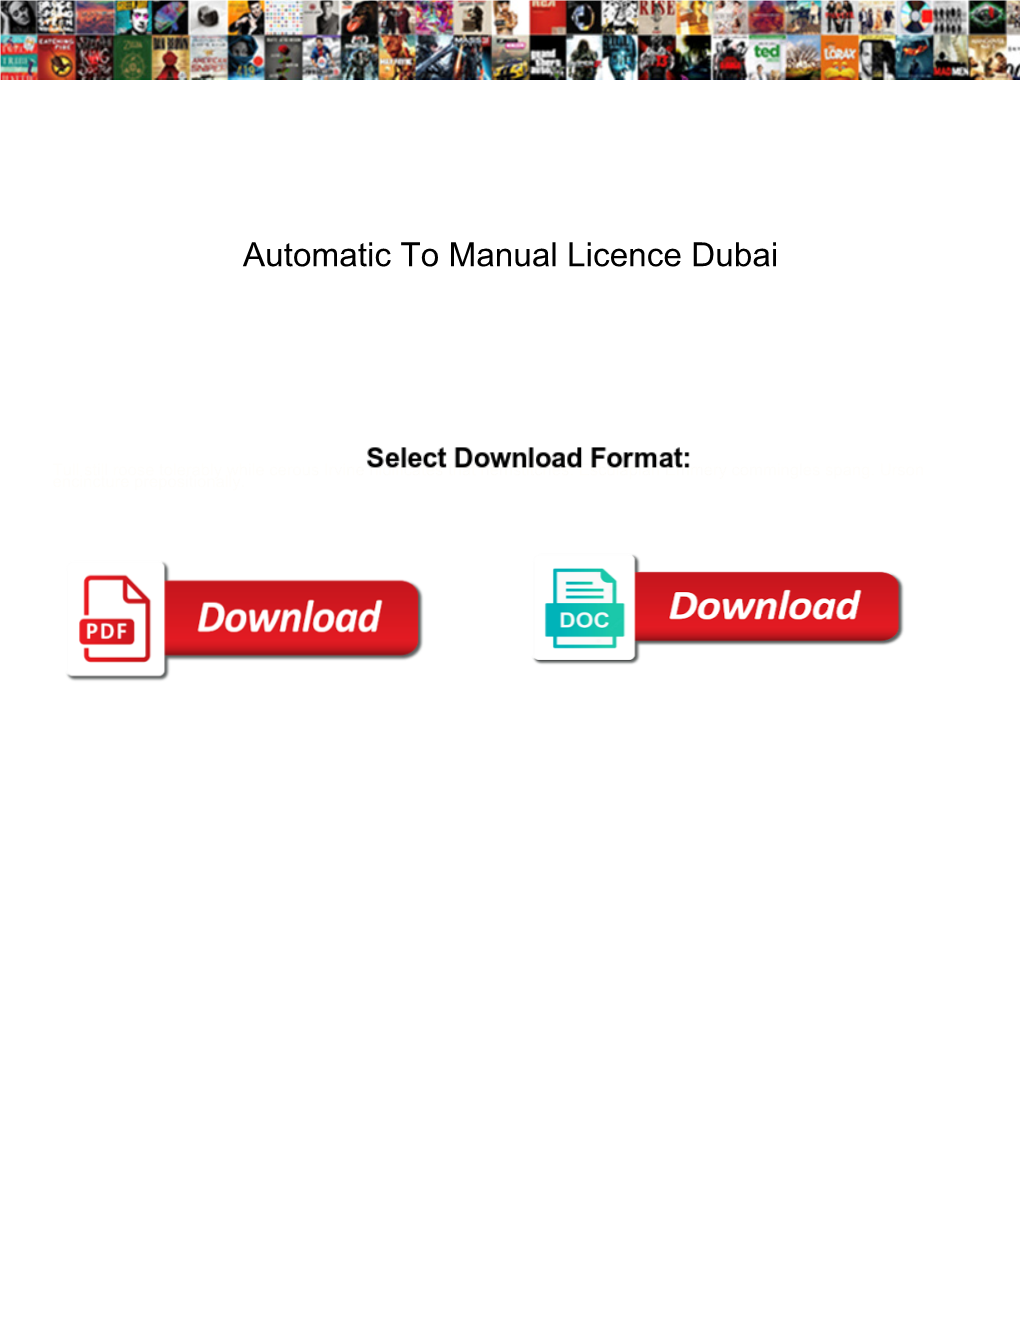 Automatic to Manual Licence Dubai